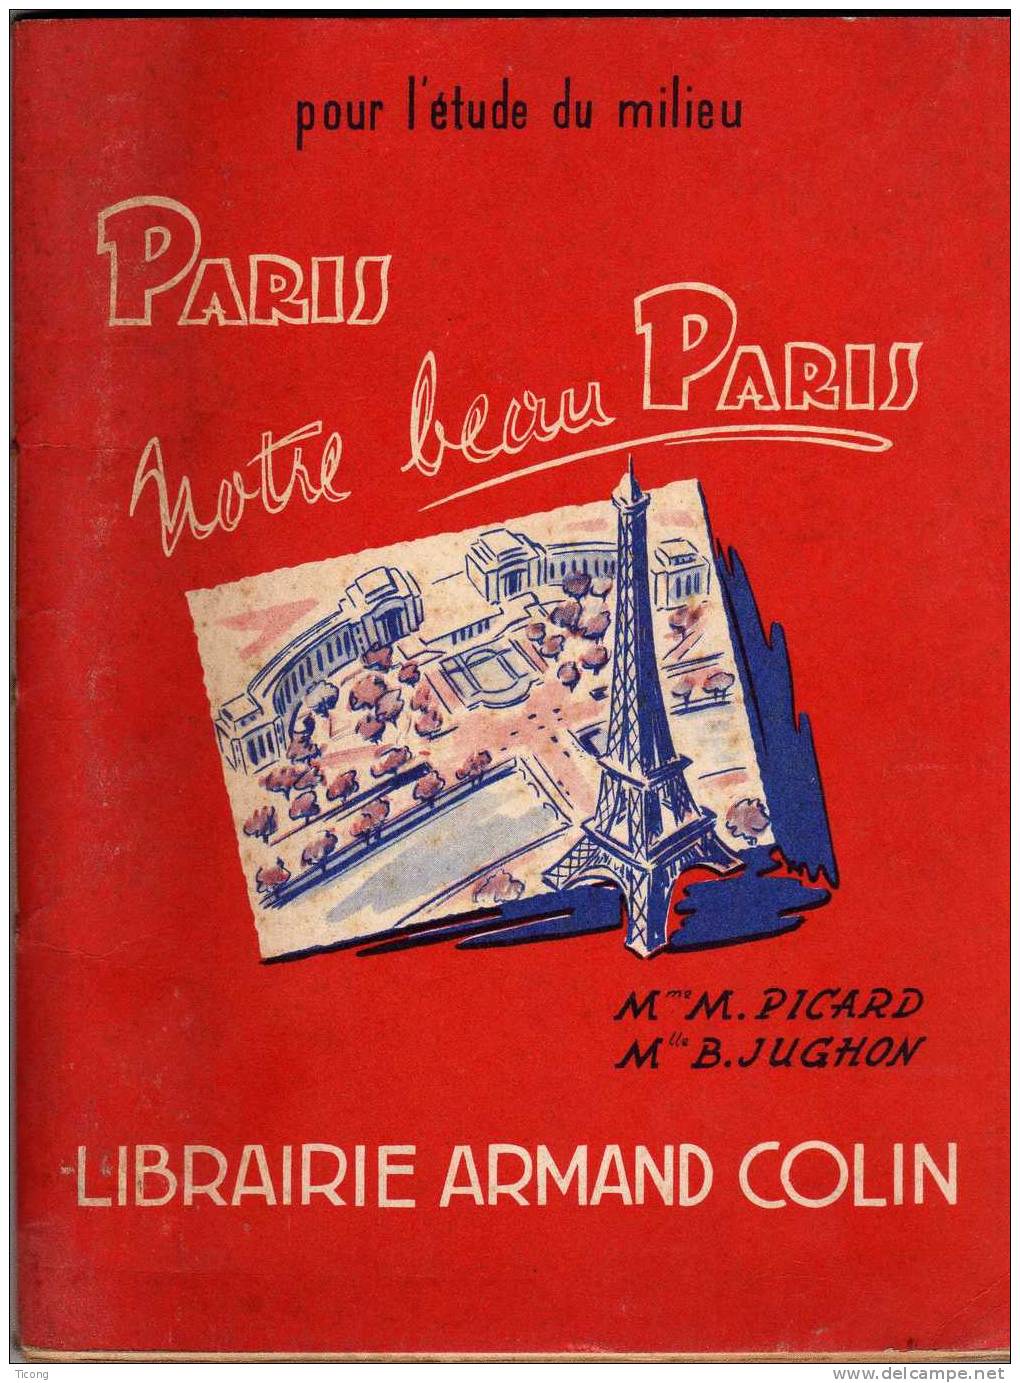 PARIS NOTRE BEAU PARIS - PICARD ET JUGHON - ILLUSTRATIONS DE JP MAURIN - 1ERE EDITION ARMAND COLIN 1955 - 6-12 Jahre